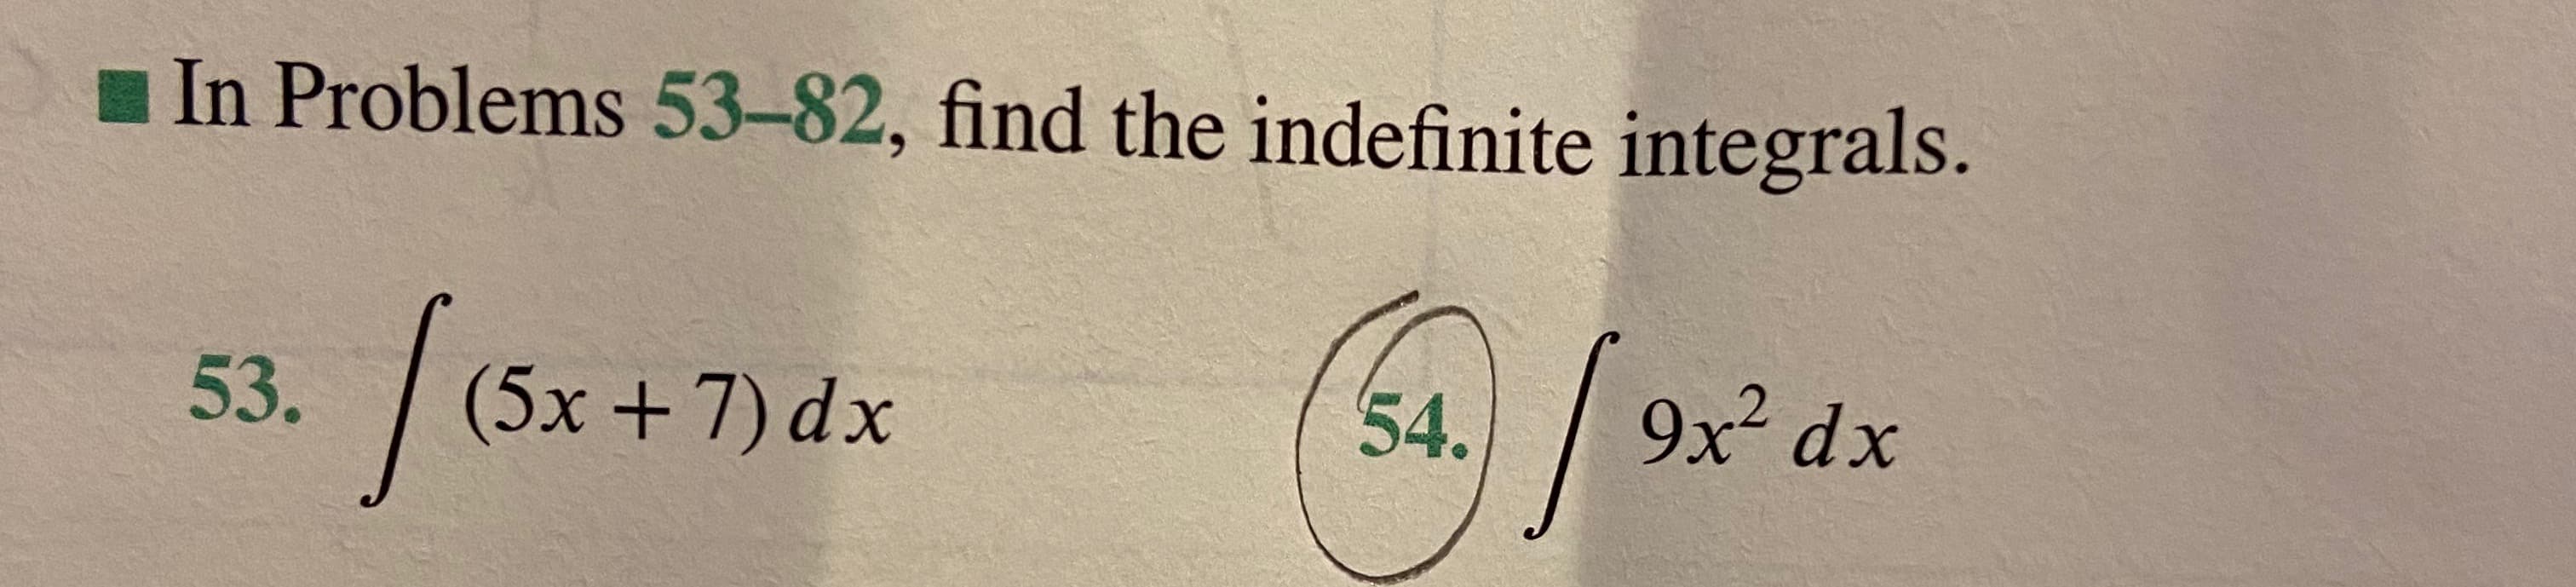 In Problems 53-82, find the indefinite integrals.
|
(5x+7) dx
9x² dx
53.
54.
